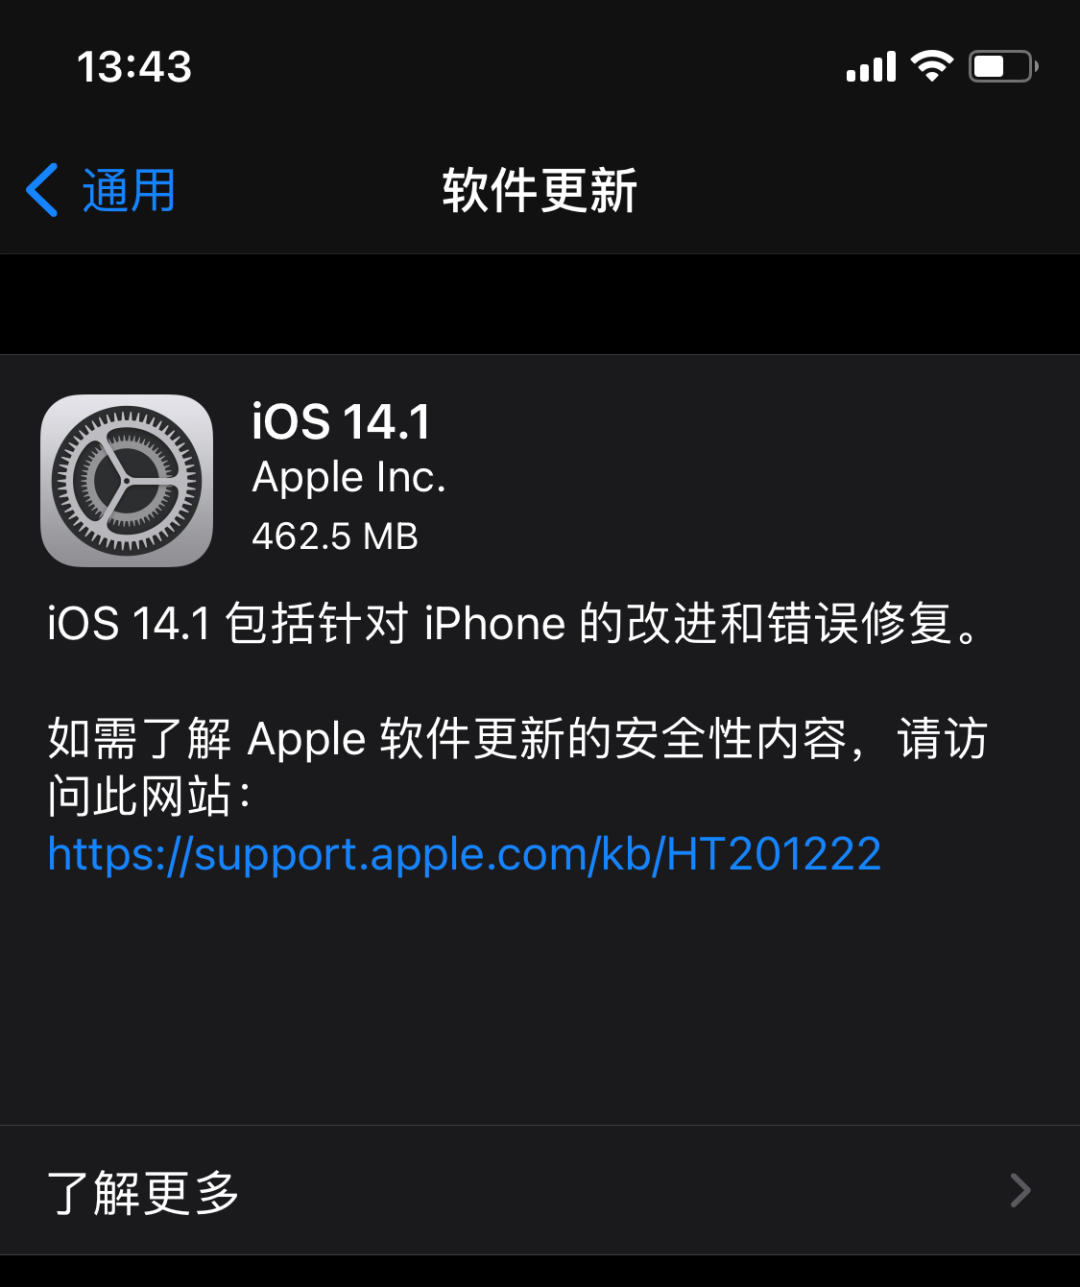 苹果推送 iOS 14.1 正式版、14.2 Beta 4 测试版